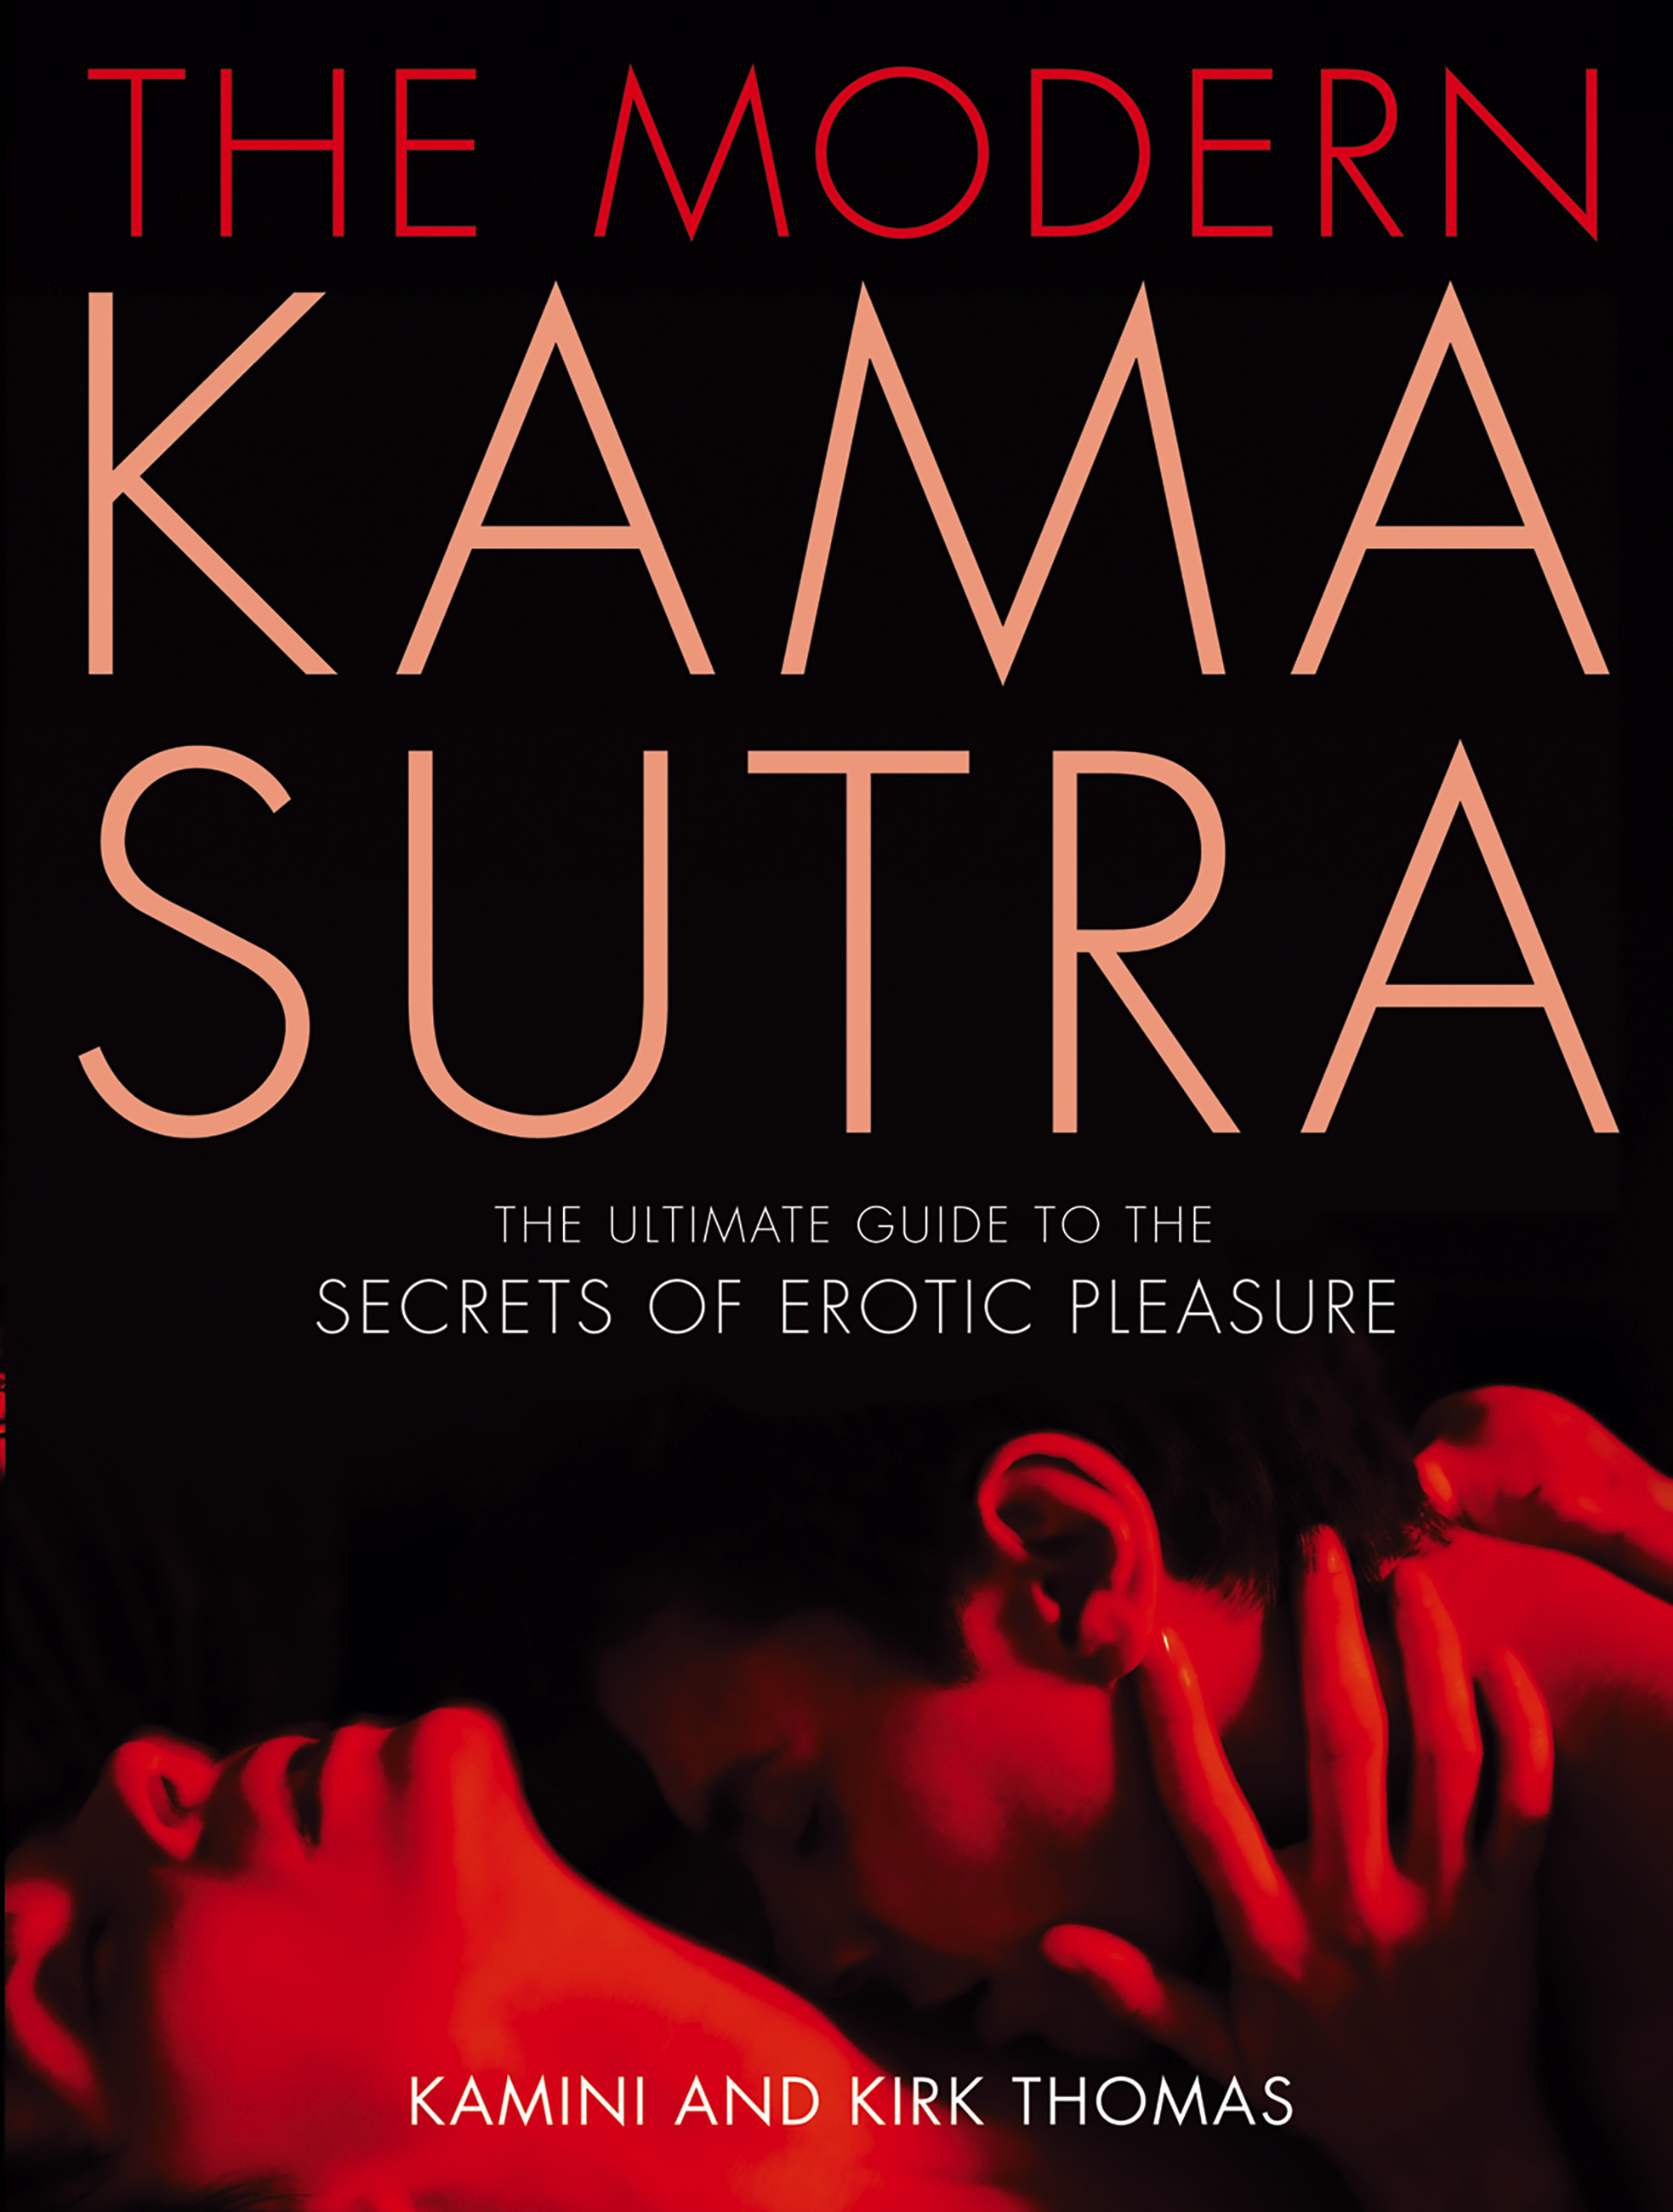 kamasutra book pdf free download